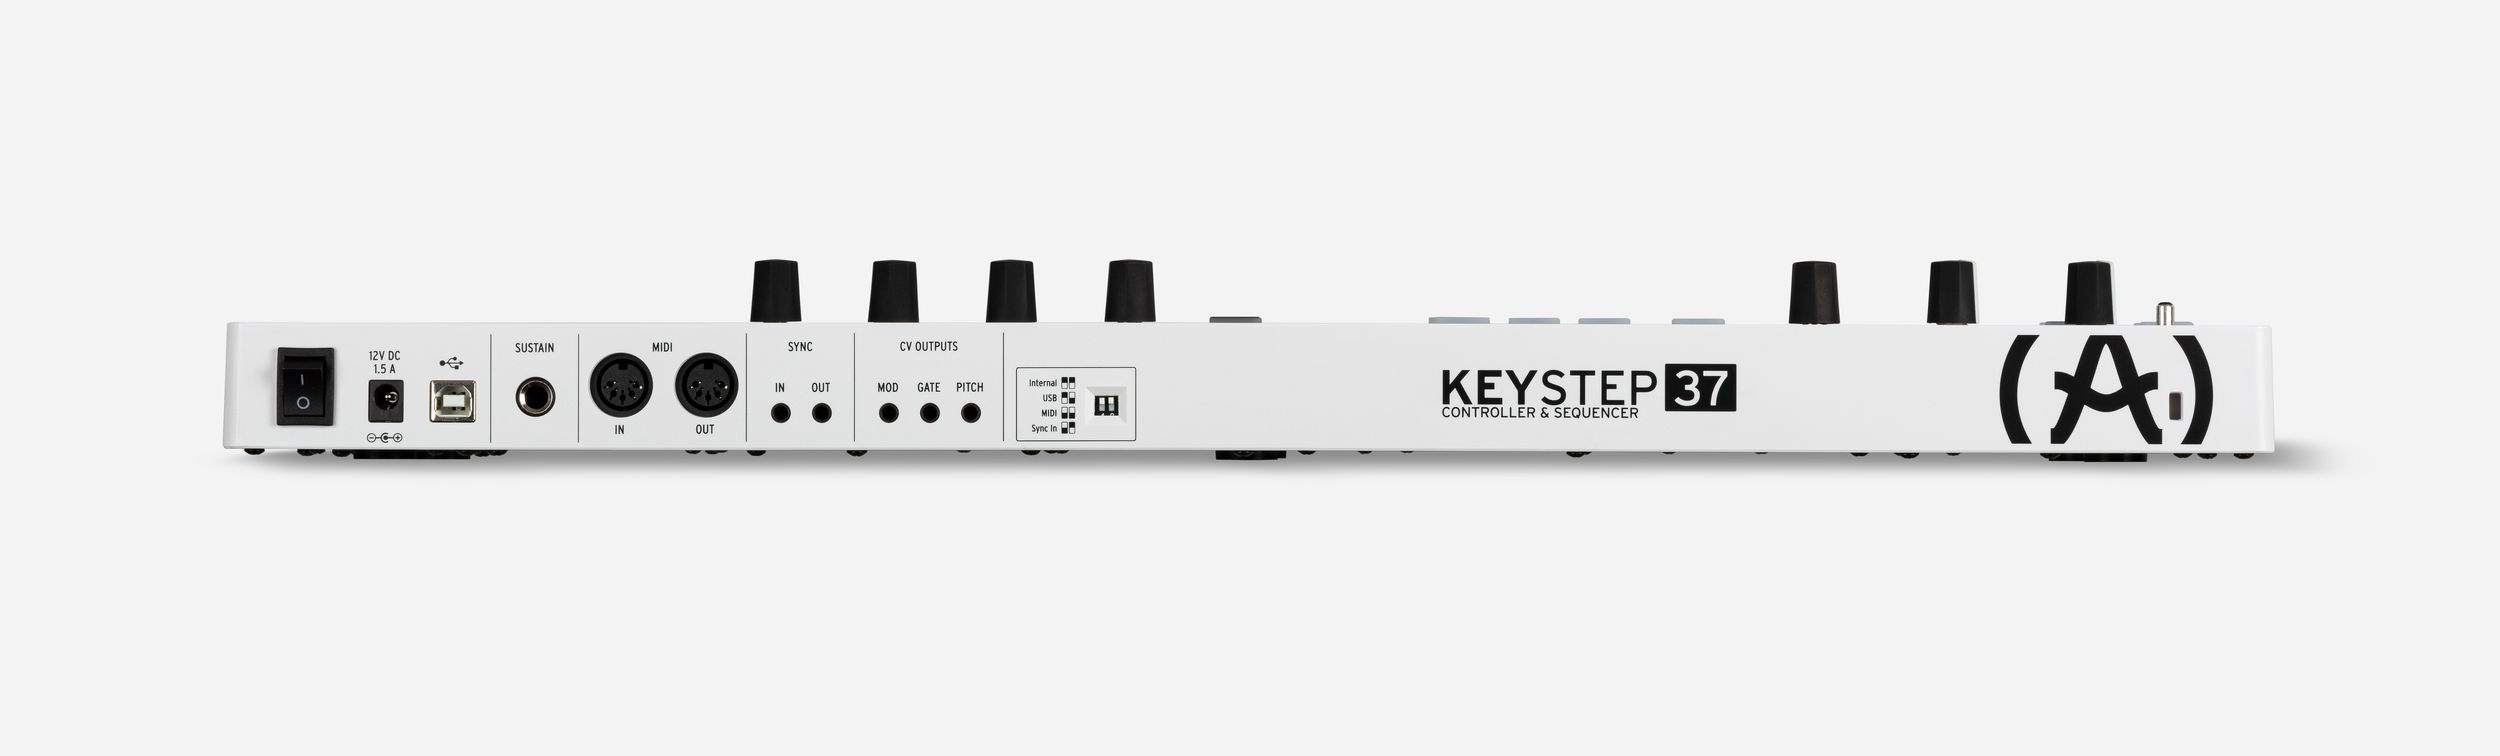 KeyStep 37背面画像